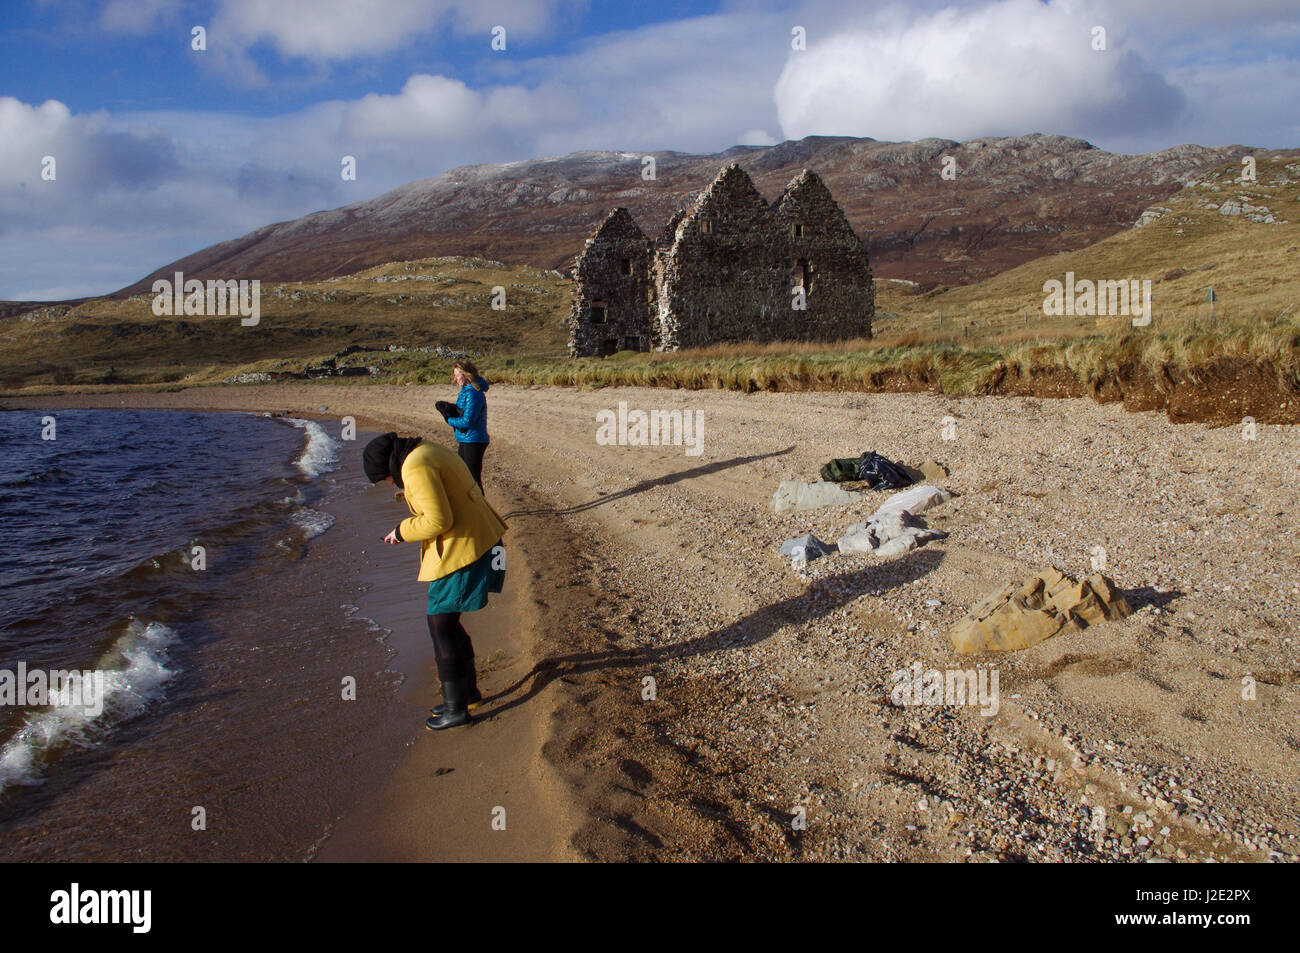 Suumer in Scozia a Loch Assynt shore, Inchnadamph, Sutherland. Il croft abbandonati in background. Foto Stock